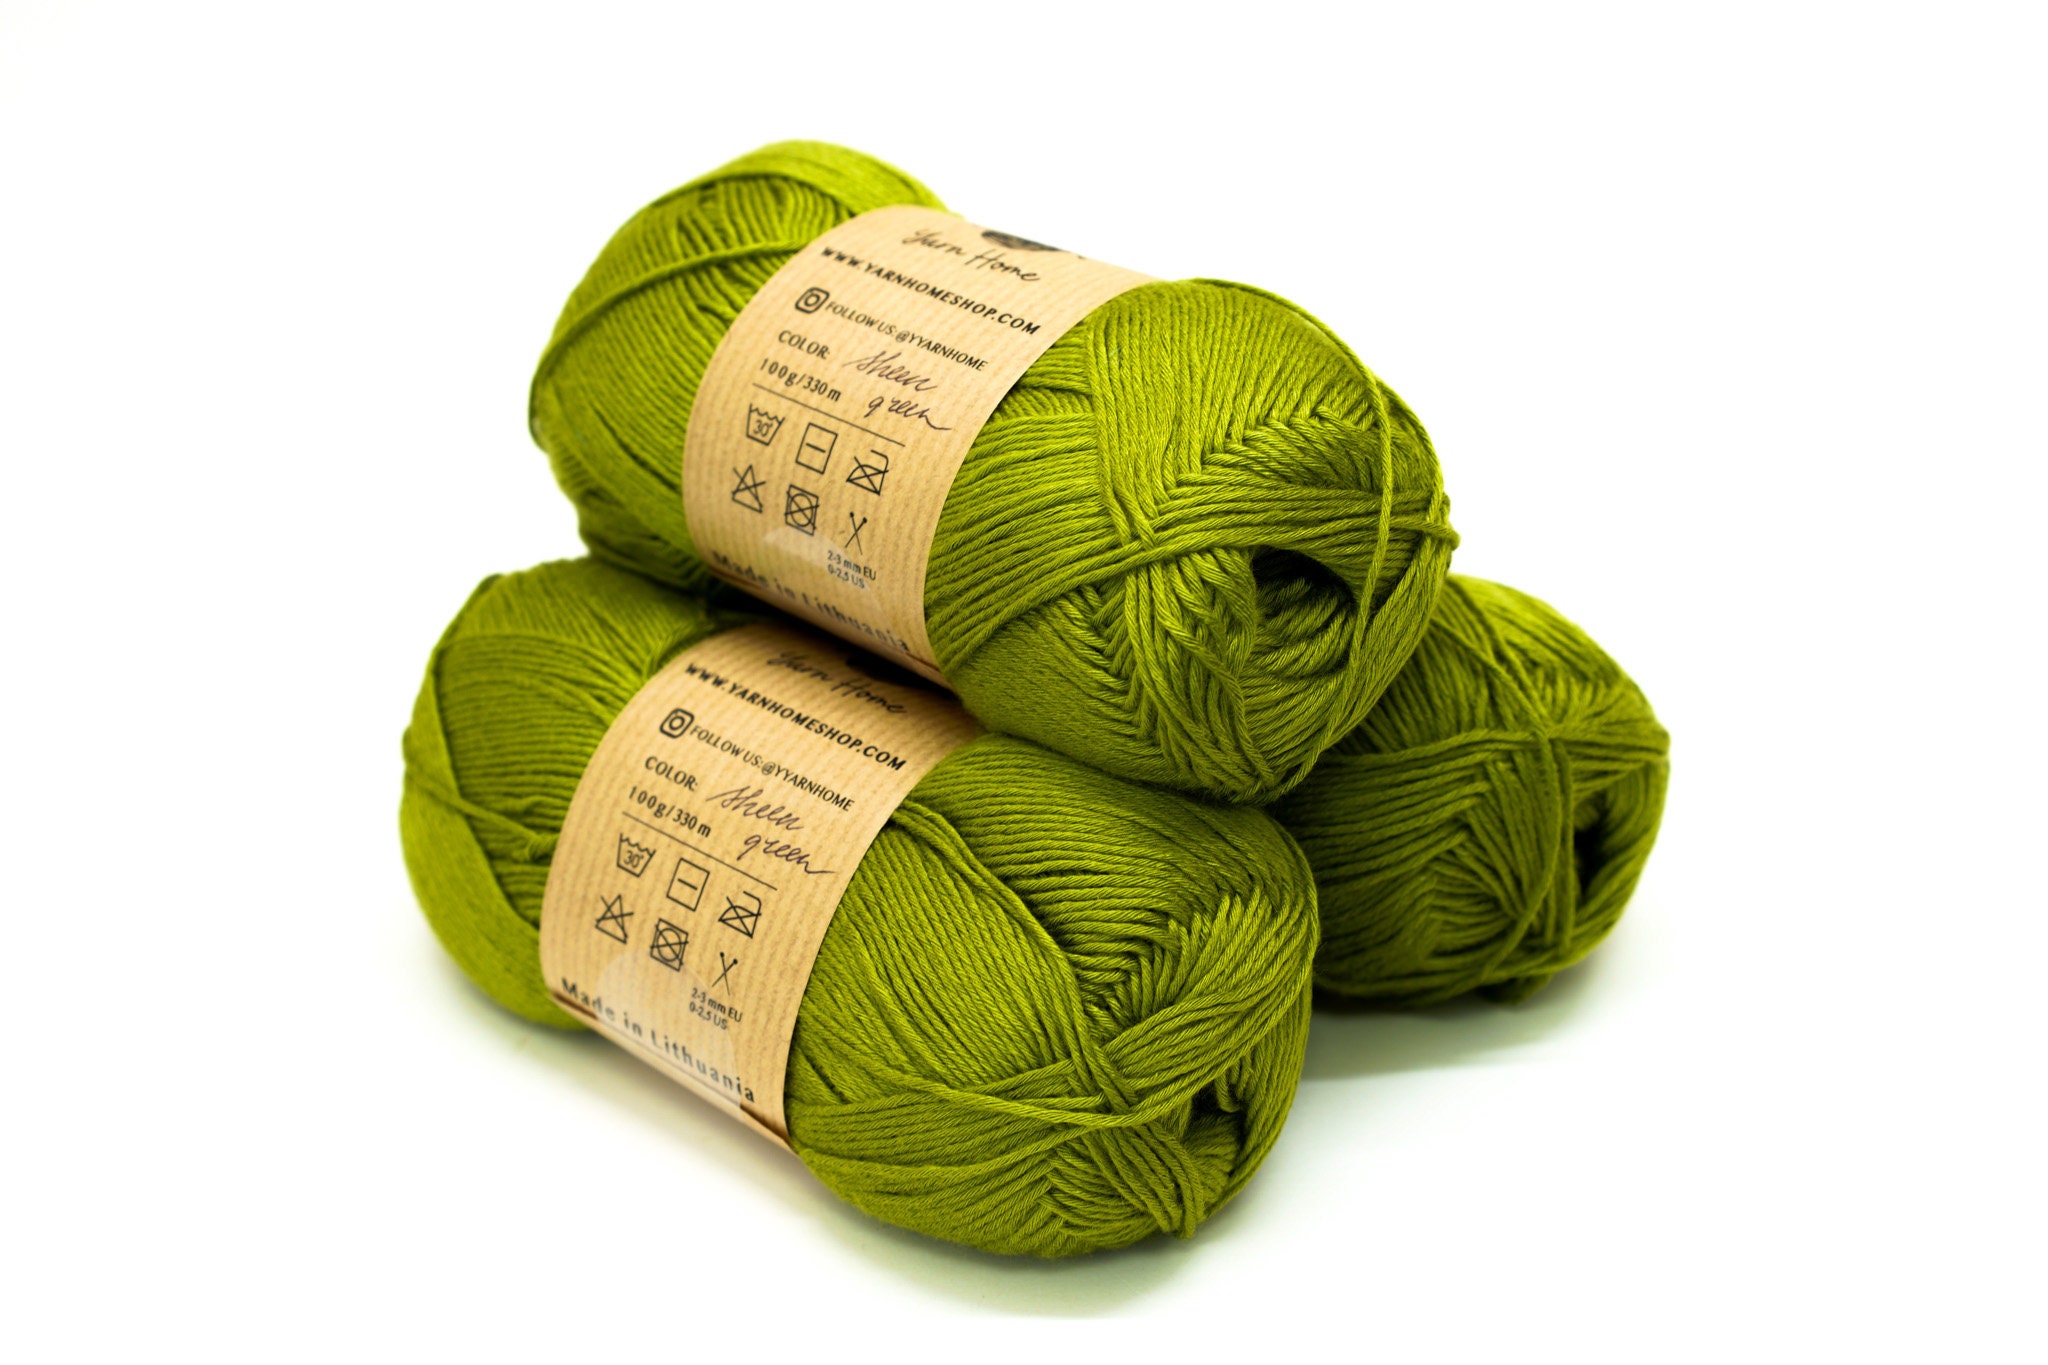 Sheen Green Bamboo Yarn for Baby Crafts 100g/330 M 100% European Bamboo Yarn  Glowing Bamboo Threads Crochet Cool Yarn for Summer Lace 